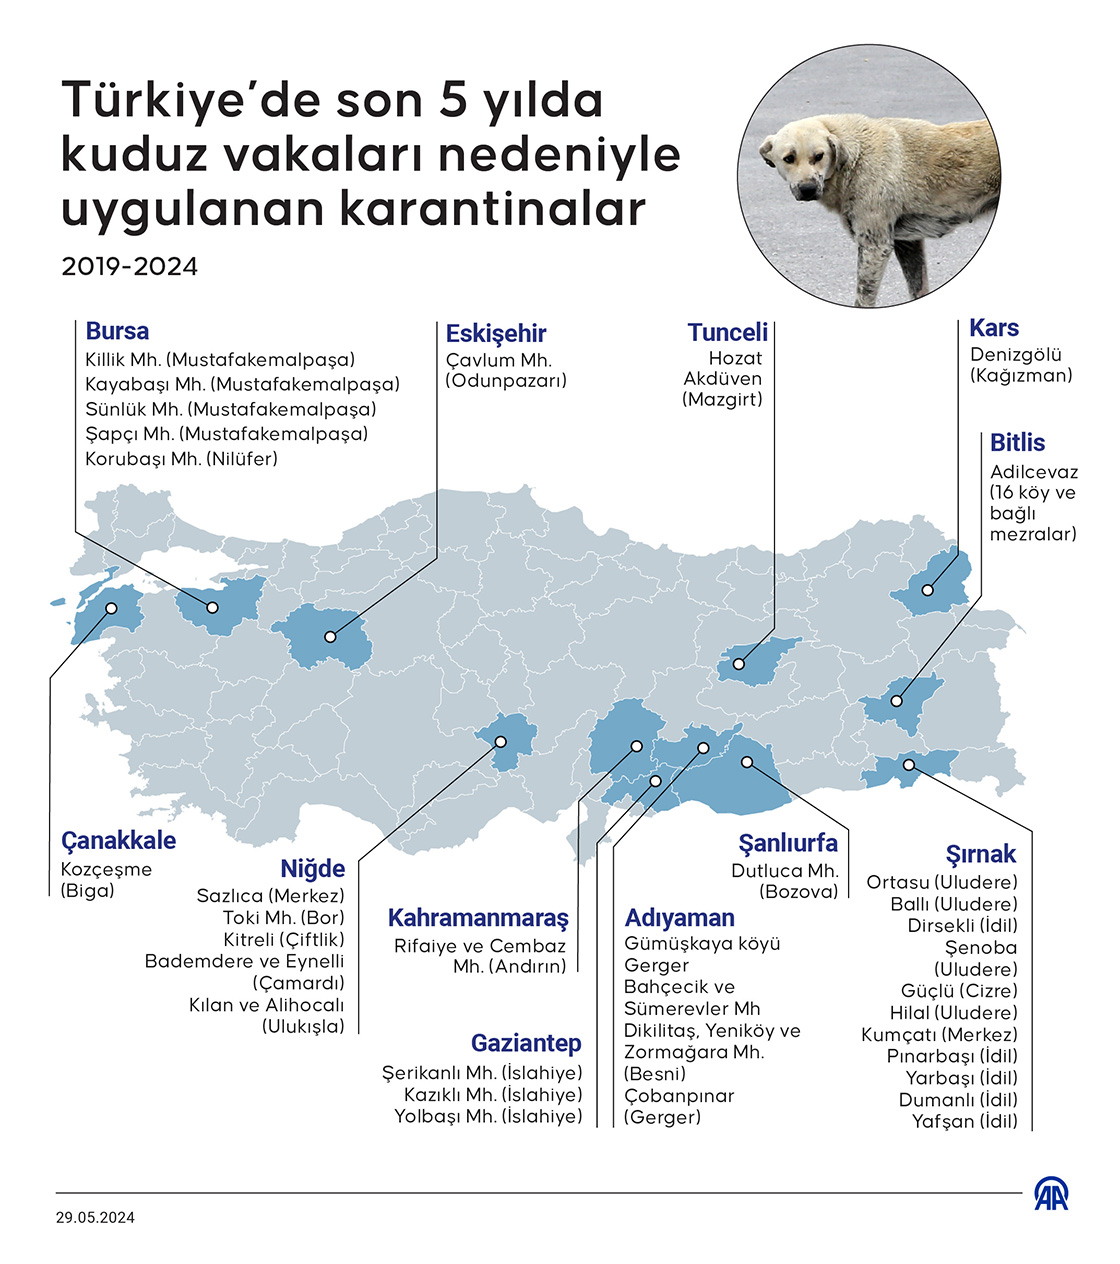 Türkiye’de meydana gelen kuduz vakaları ve karantinalar